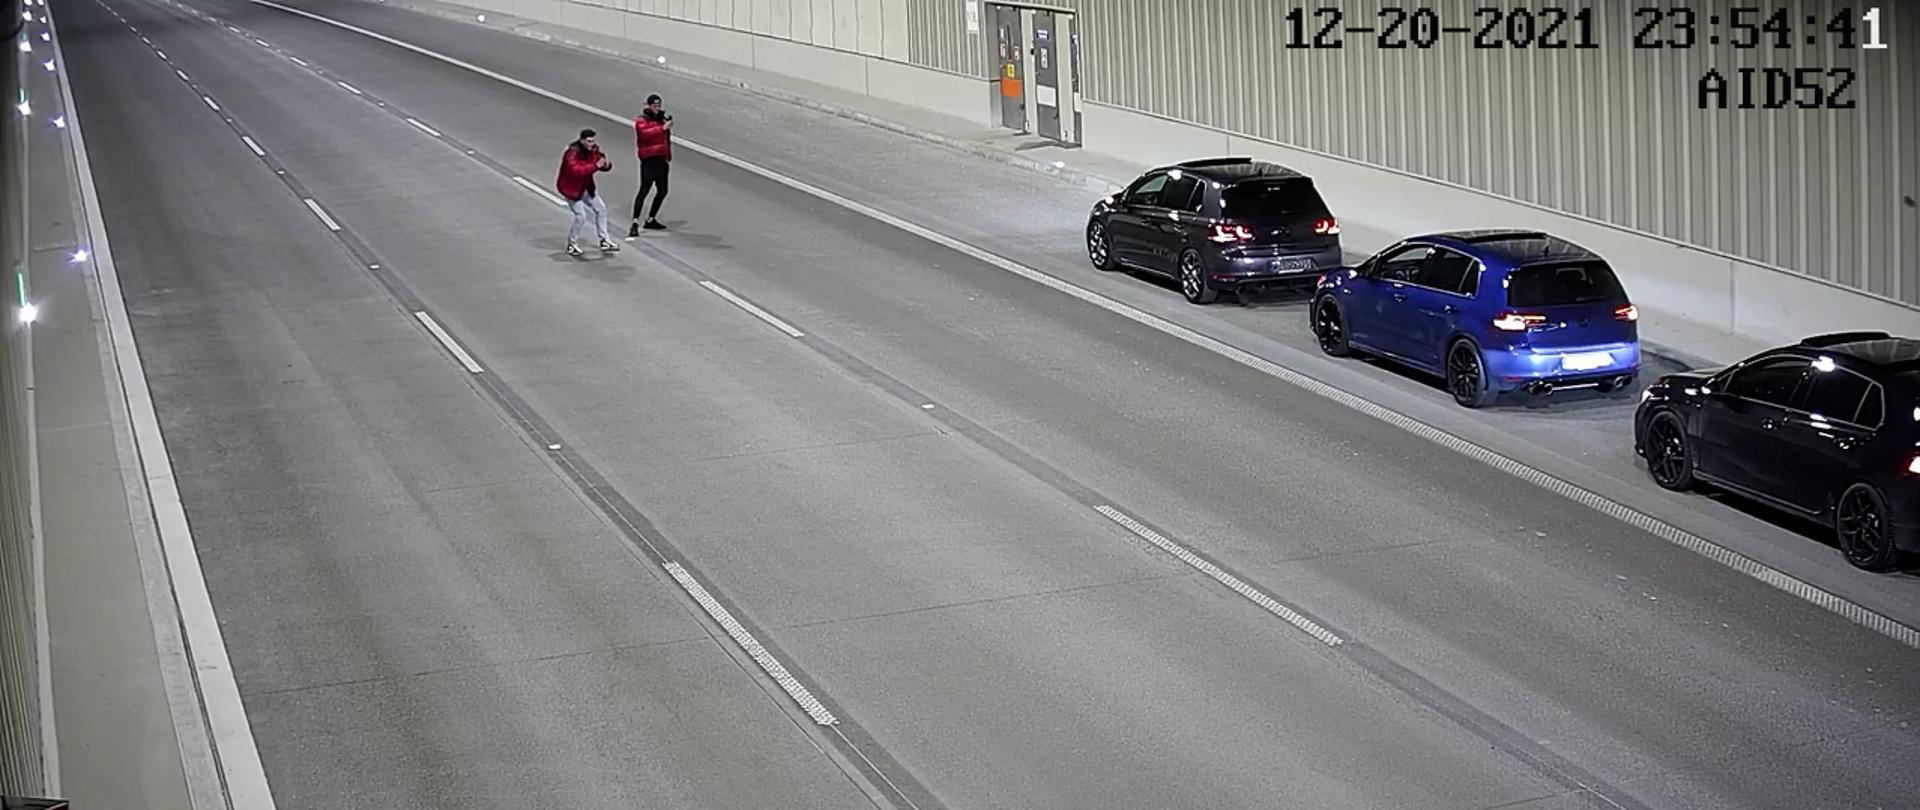 Przykład nieodpowiedzialnych zachowań użytkowników tunelu na S2POW pod Ursynowem. Trzy zaparkowane na pasie awaryjnym pojazdy po prawej stronie fotografii oraz dwóch mężczyzn na środku tunelu robiących zdjęcia tych pojazdów.